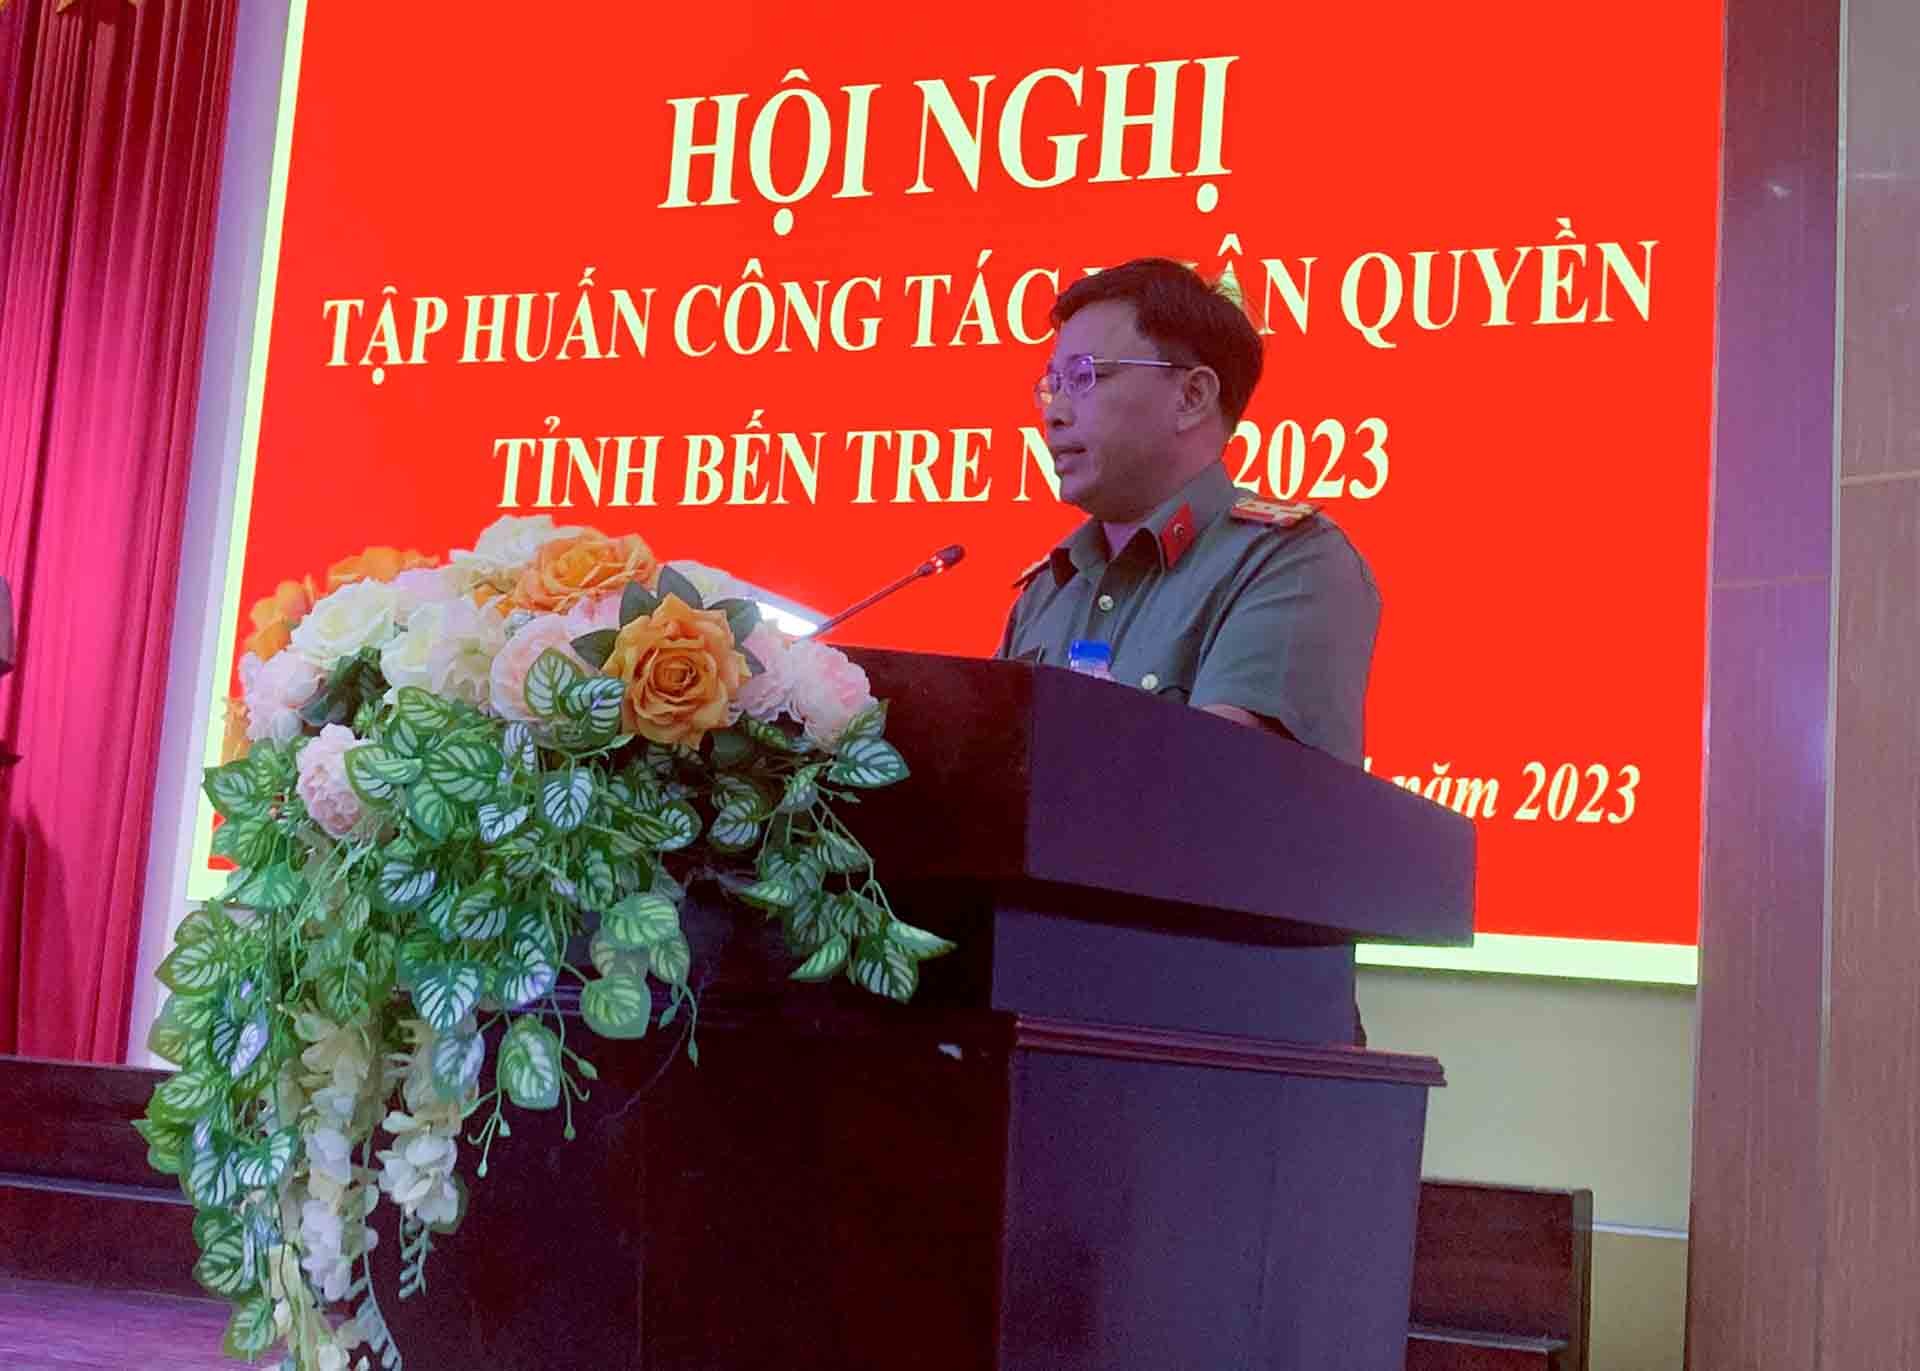 Đại tá Phạm Thanh Tùng - Phó Giám đốc Công an tỉnh, Phó Trưởng Ban thường trực Ban Chỉ đạo về Nhân quyền tỉnh Bến Tre phát biểu.